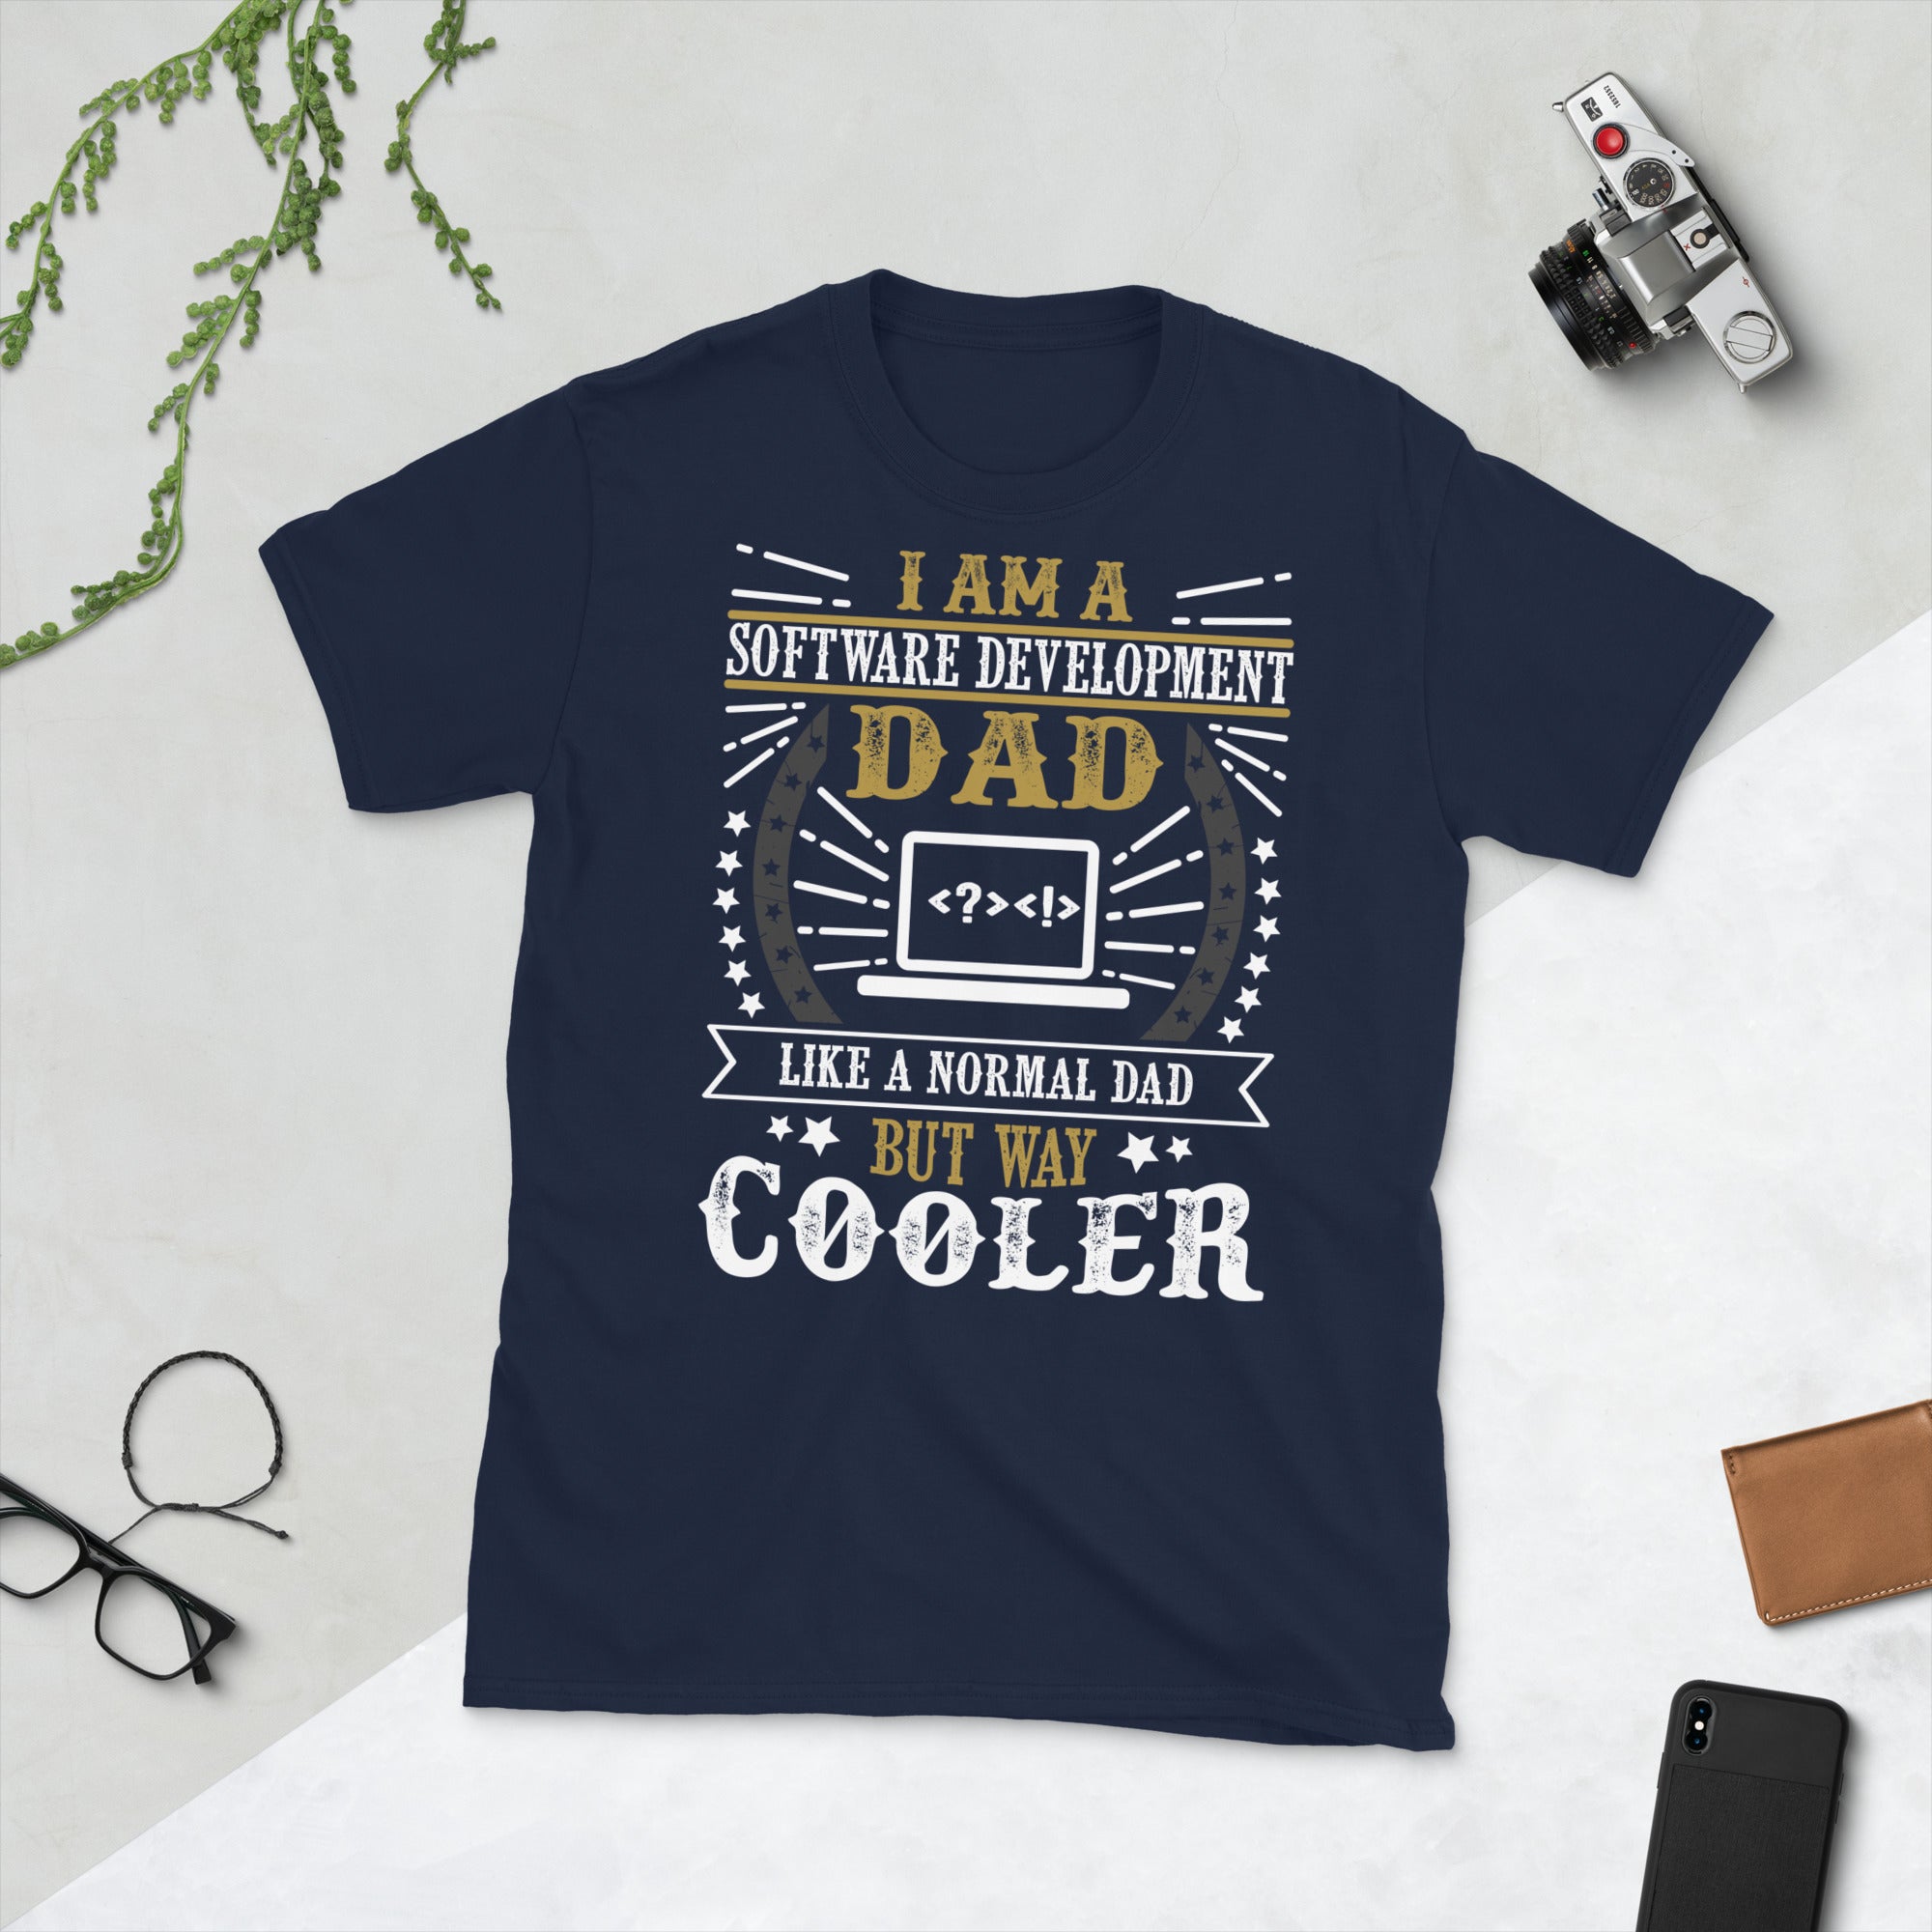 Software Development Dad Shirt, Software Developer T Shirt, Computer Dad Shirt, Computer Engineer Funny Shirt, Web Developer Gifts